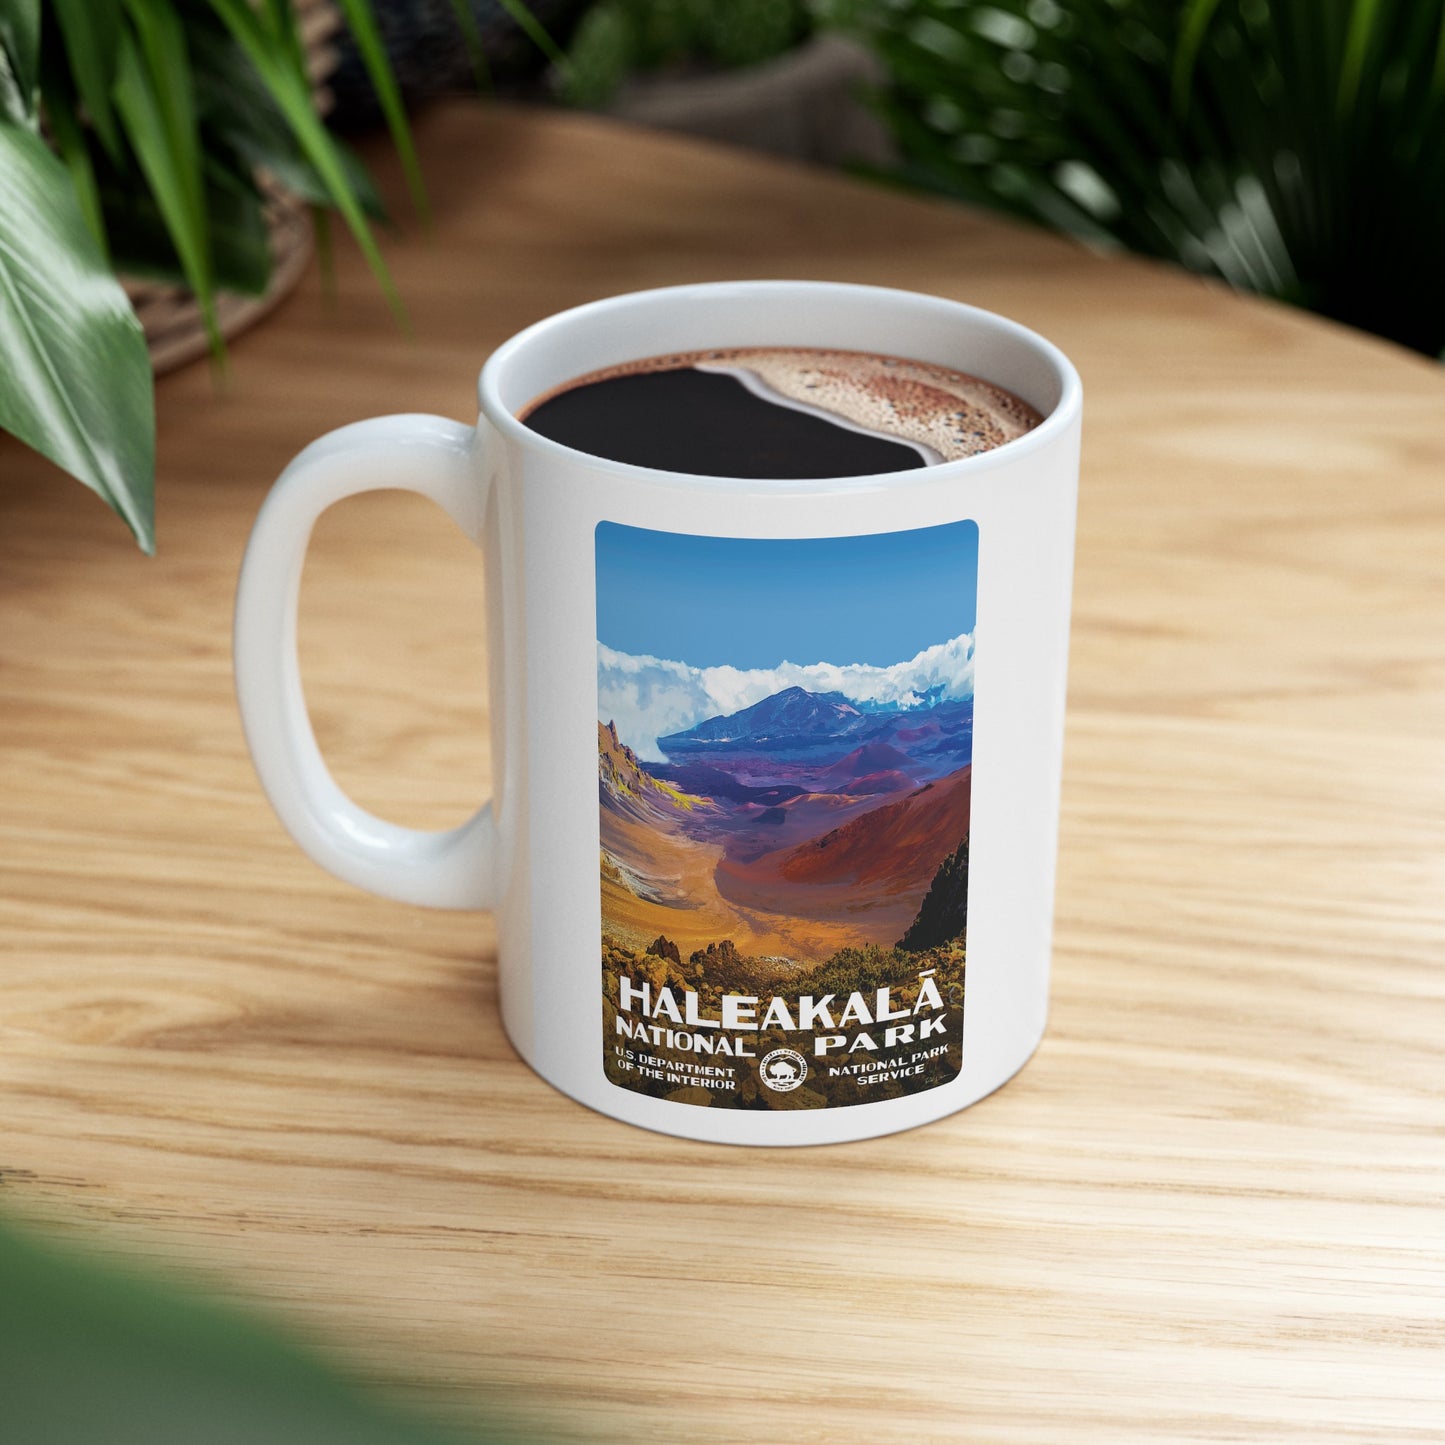 Haleakala National Park Ceramic Mug